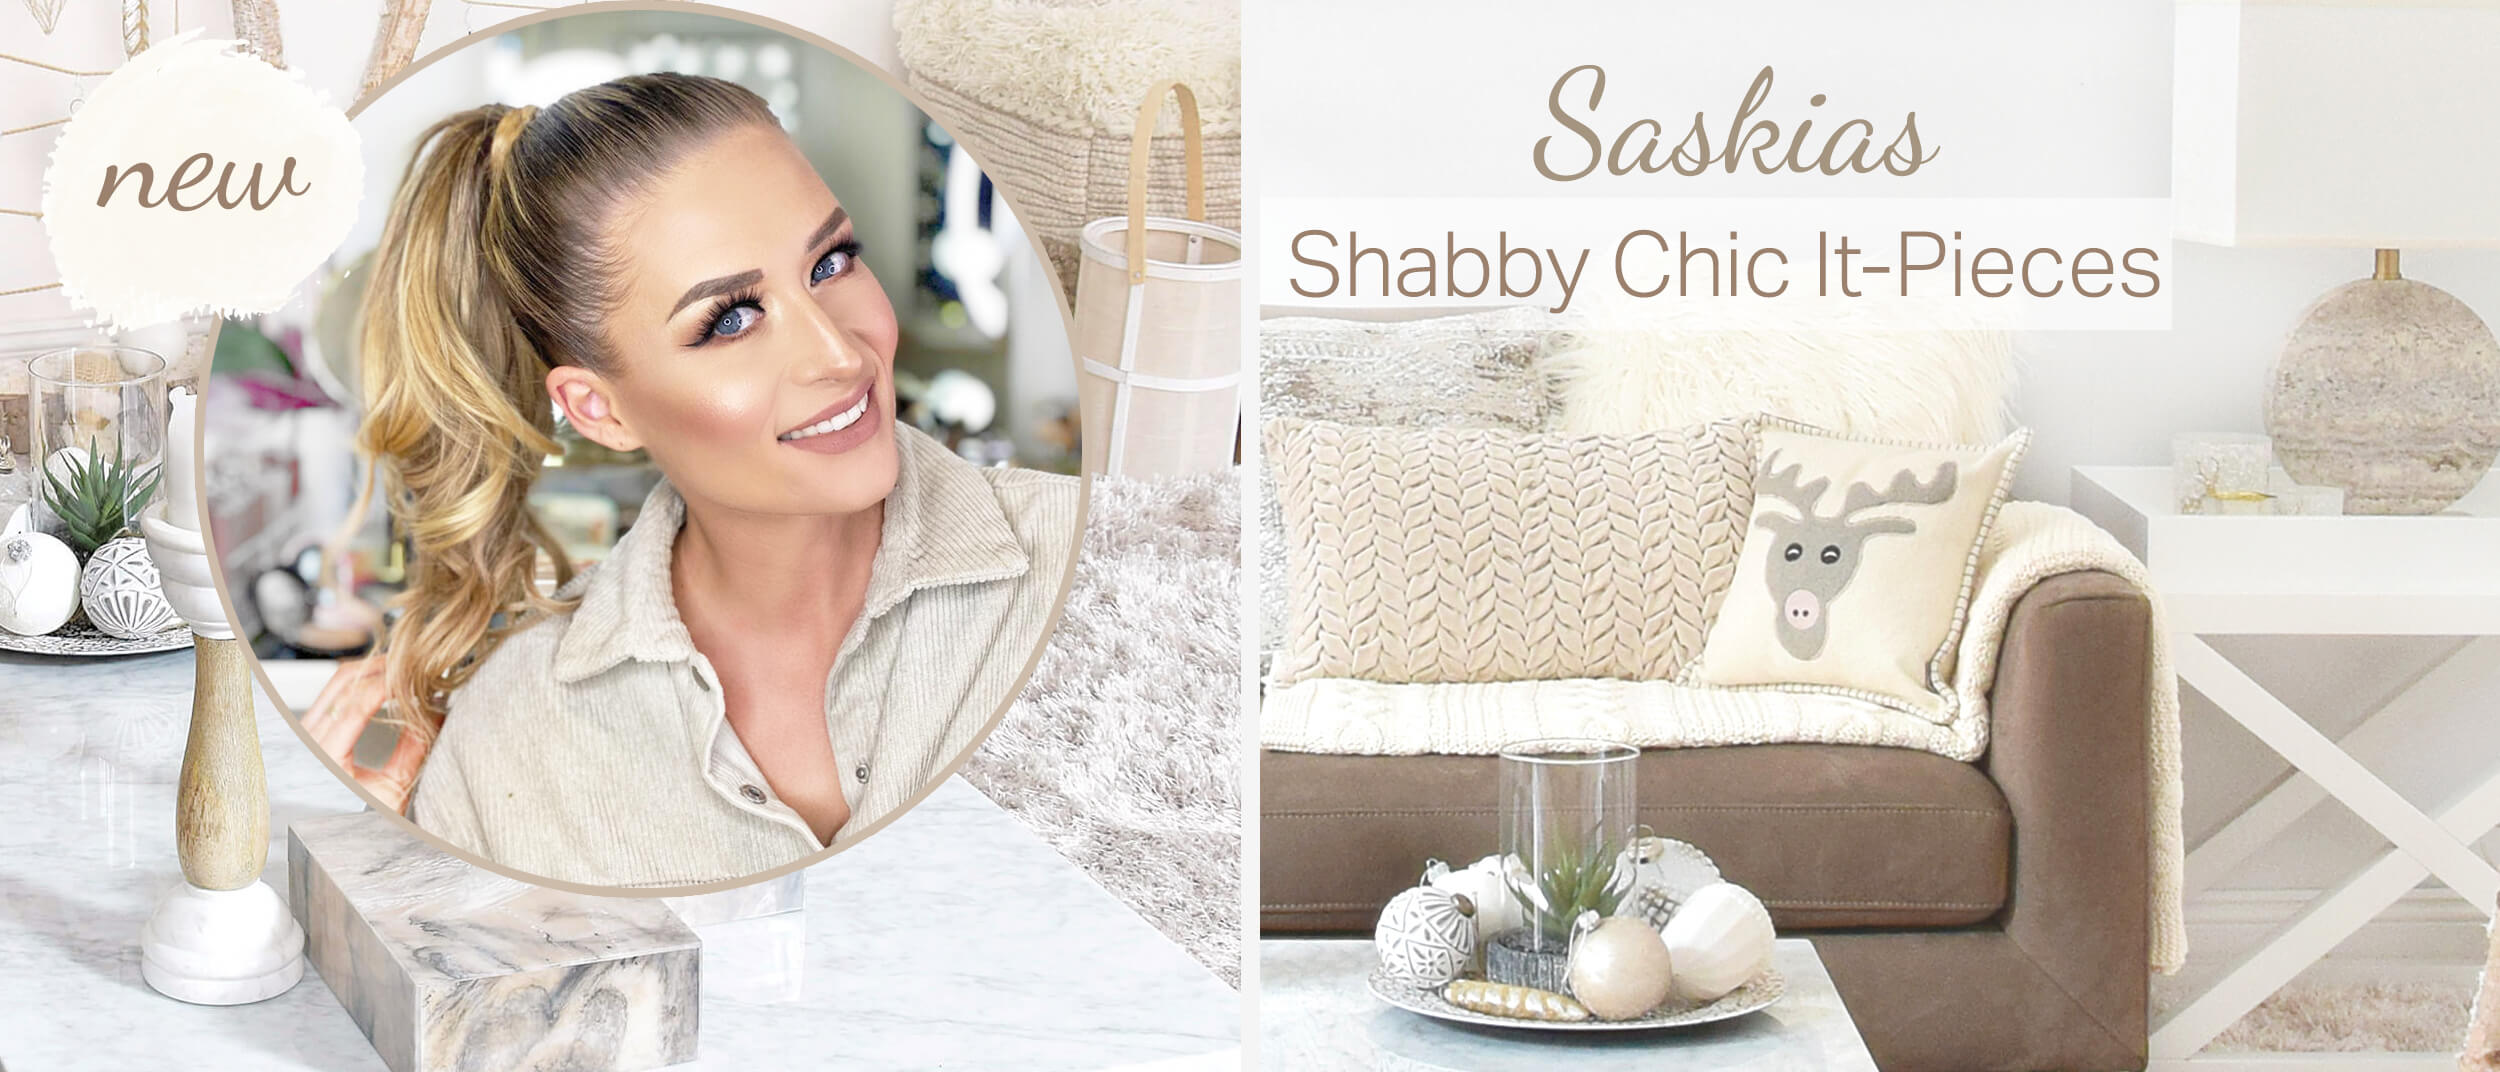 Saskias Shabby Chic It-Pieces